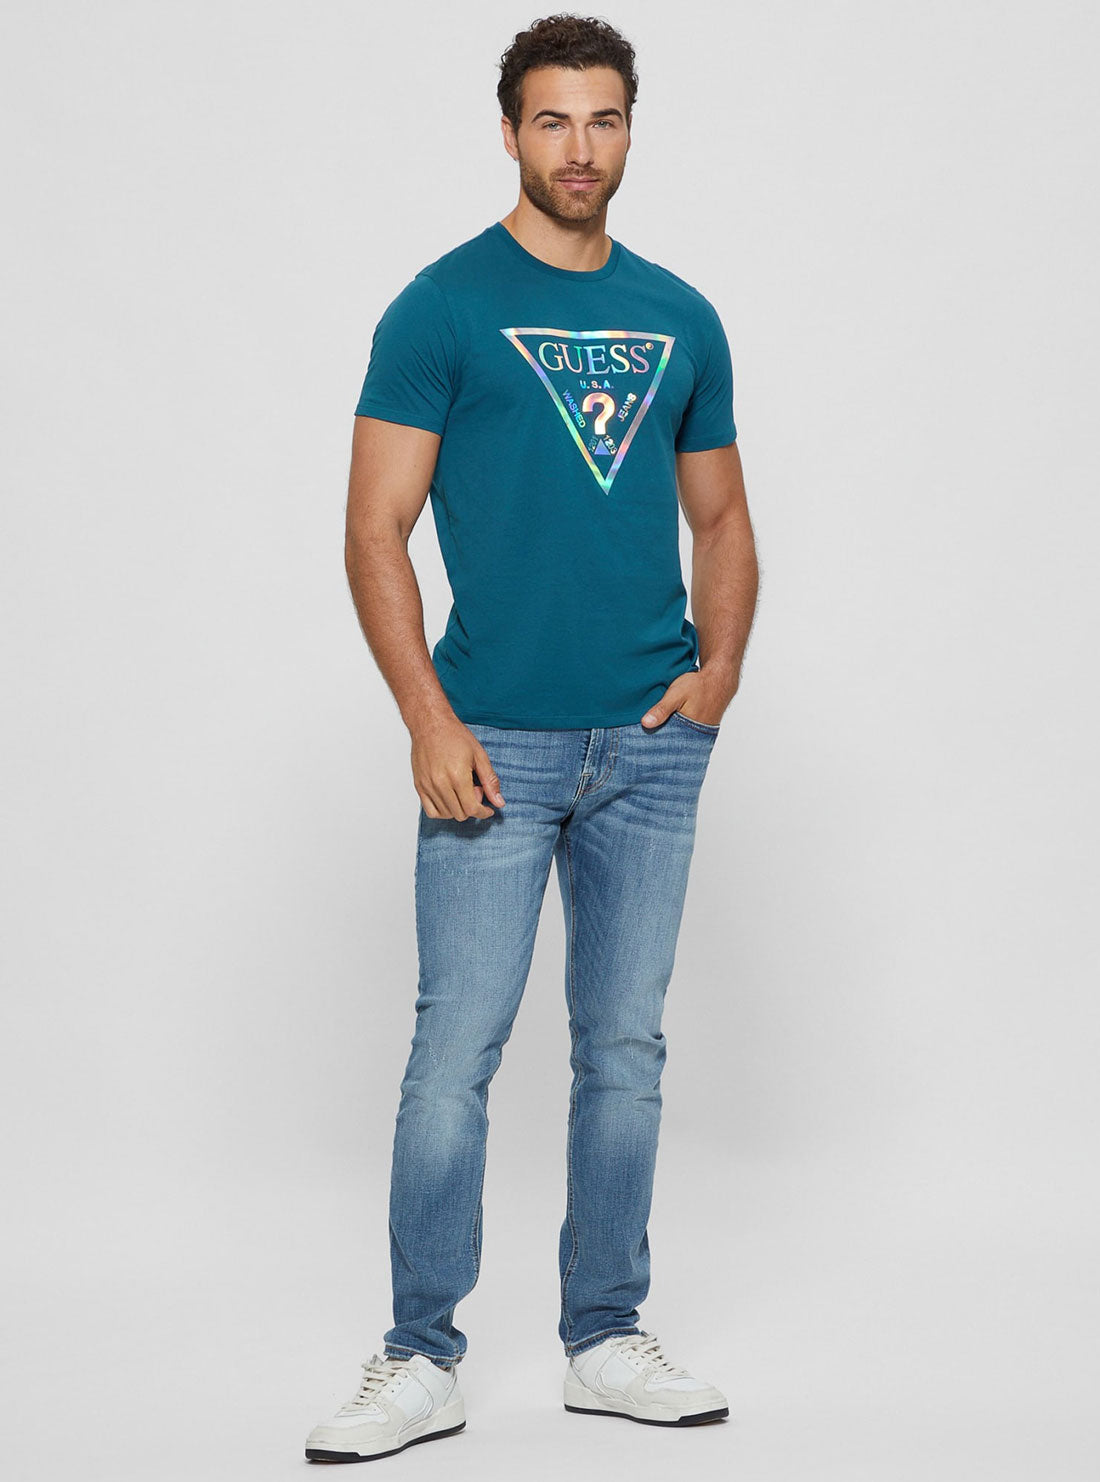 Teal Blue Iridescent Logo T-Shirt | GUESS Men's Apparel | full view